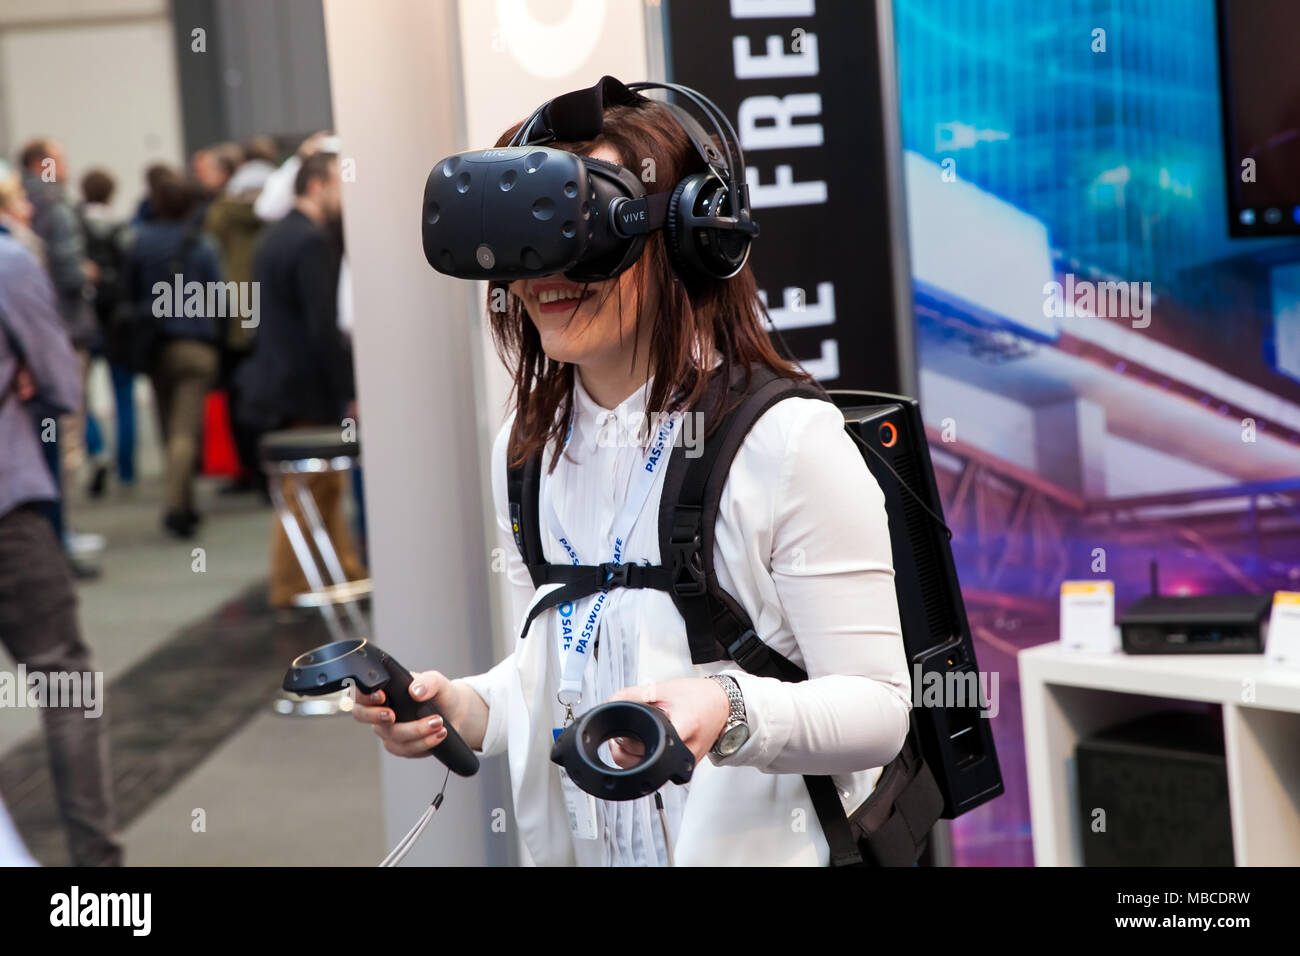 Niña jugando juegos de video en el casco de realidad virtual y los controladores de dispositivo desarrollado por HTC vive en la exposición Cebit 2017 en Hannover, Alemania Foto de stock